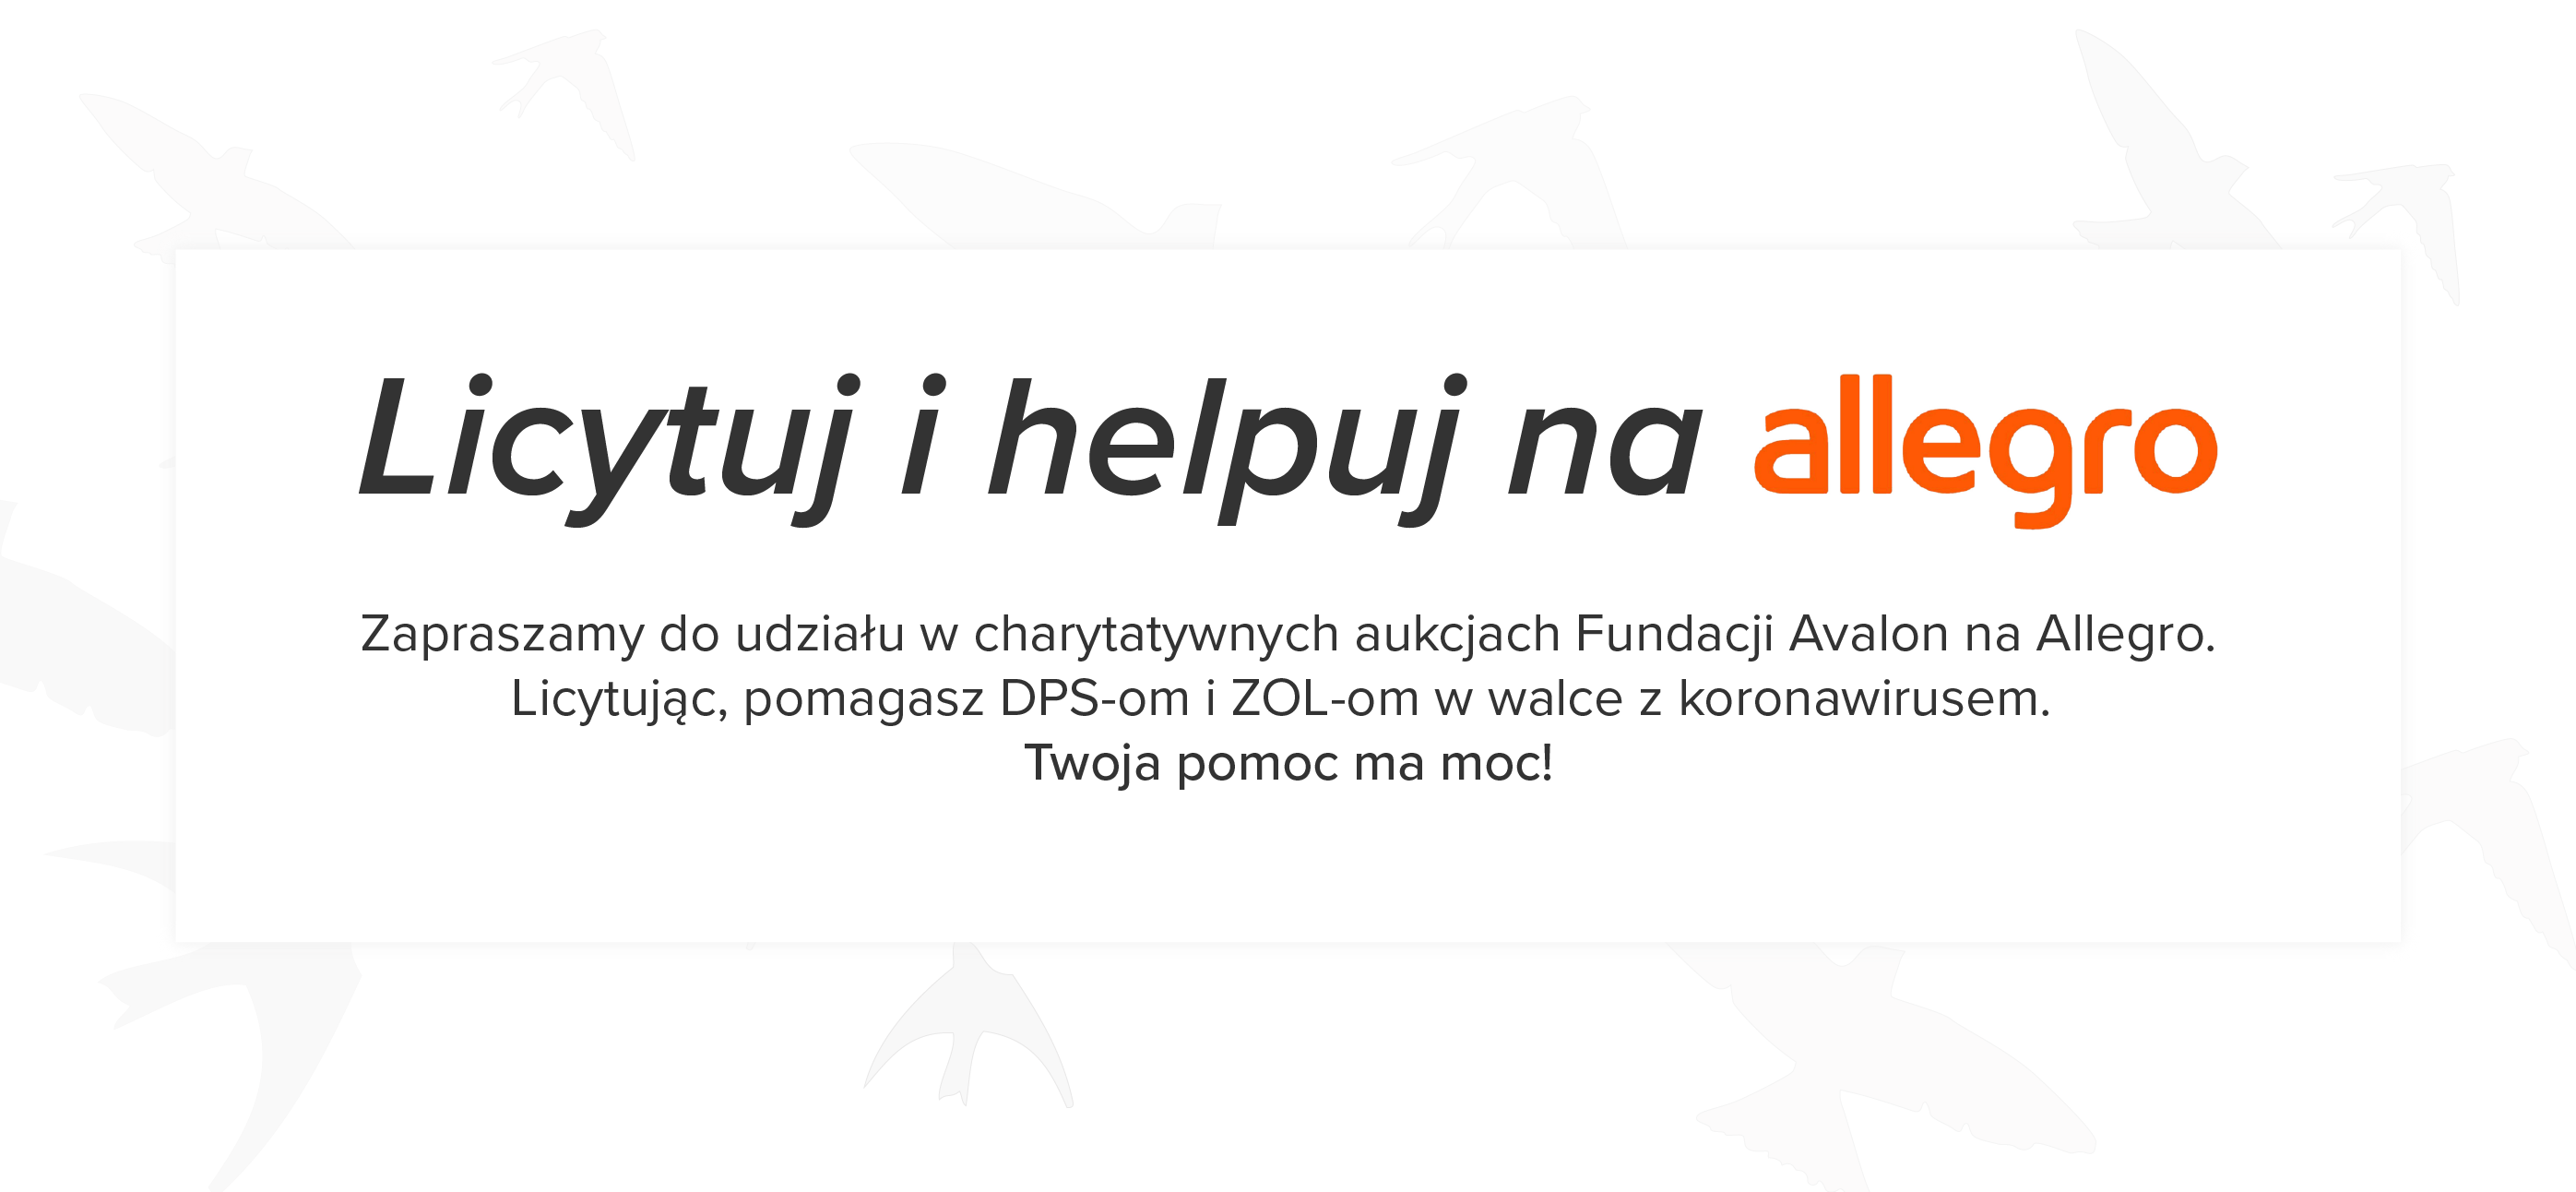 Na grafice napis Licytuj i helpuj na allegro Zapraszamy do udziału w charytatywnych aukcjach Fundacji Avalon na Allegro. Licytując, pomagasz DPS-om i ZOL-om w walce z kornawirusem. Twoja pomoc ma moc!